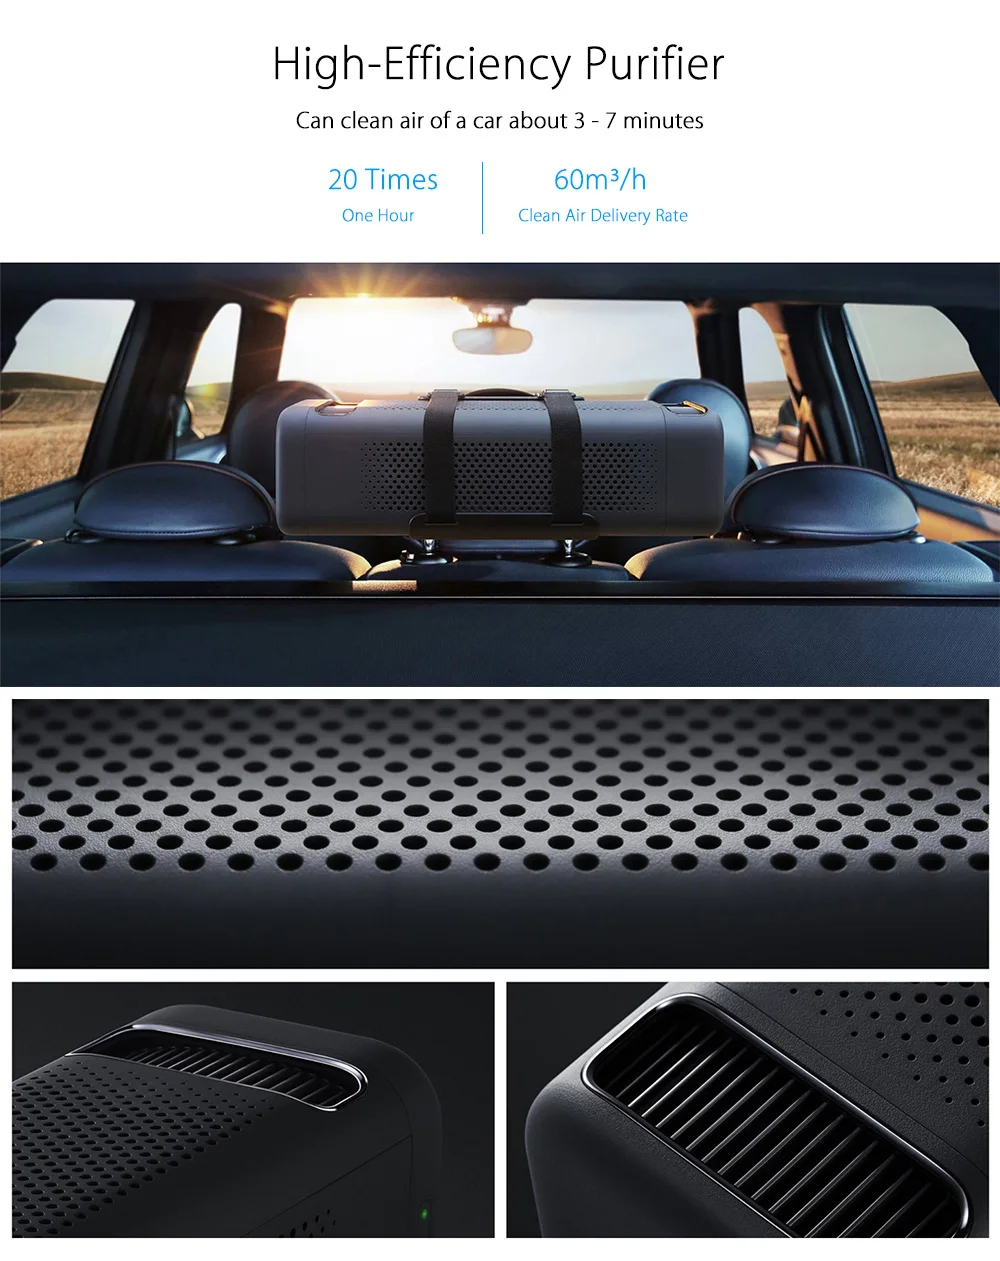 Автомобильный очиститель воздуха Xiao mi Jia, освежитель воздуха с Bluetooth 4,1 для смартфона mi home app, дистанционное управление(USB версия